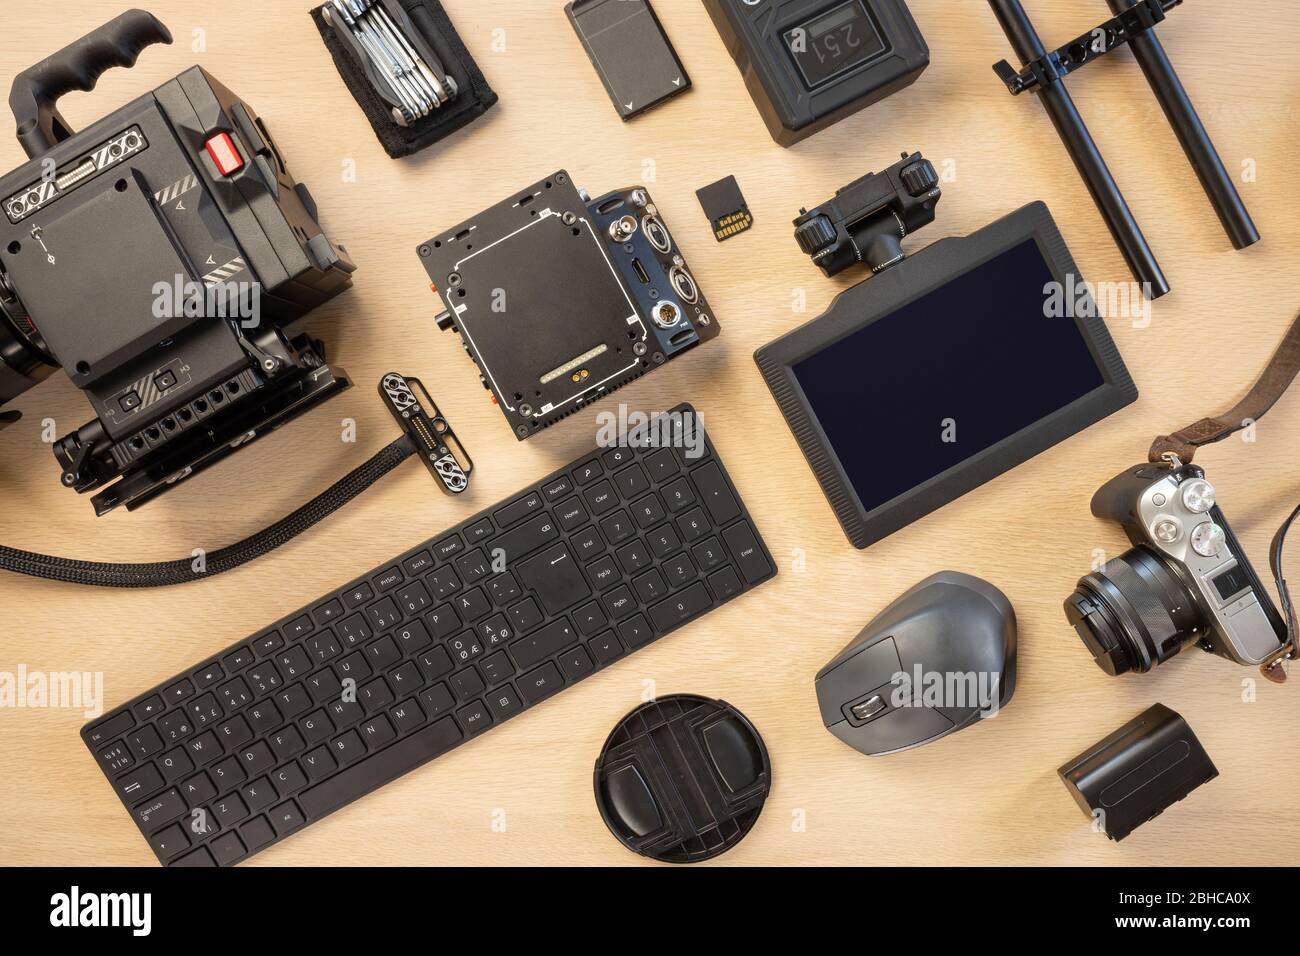 Direkt über Aufnahme von Computerteilen und Fotoausrüstung auf dem Tisch Stockfoto